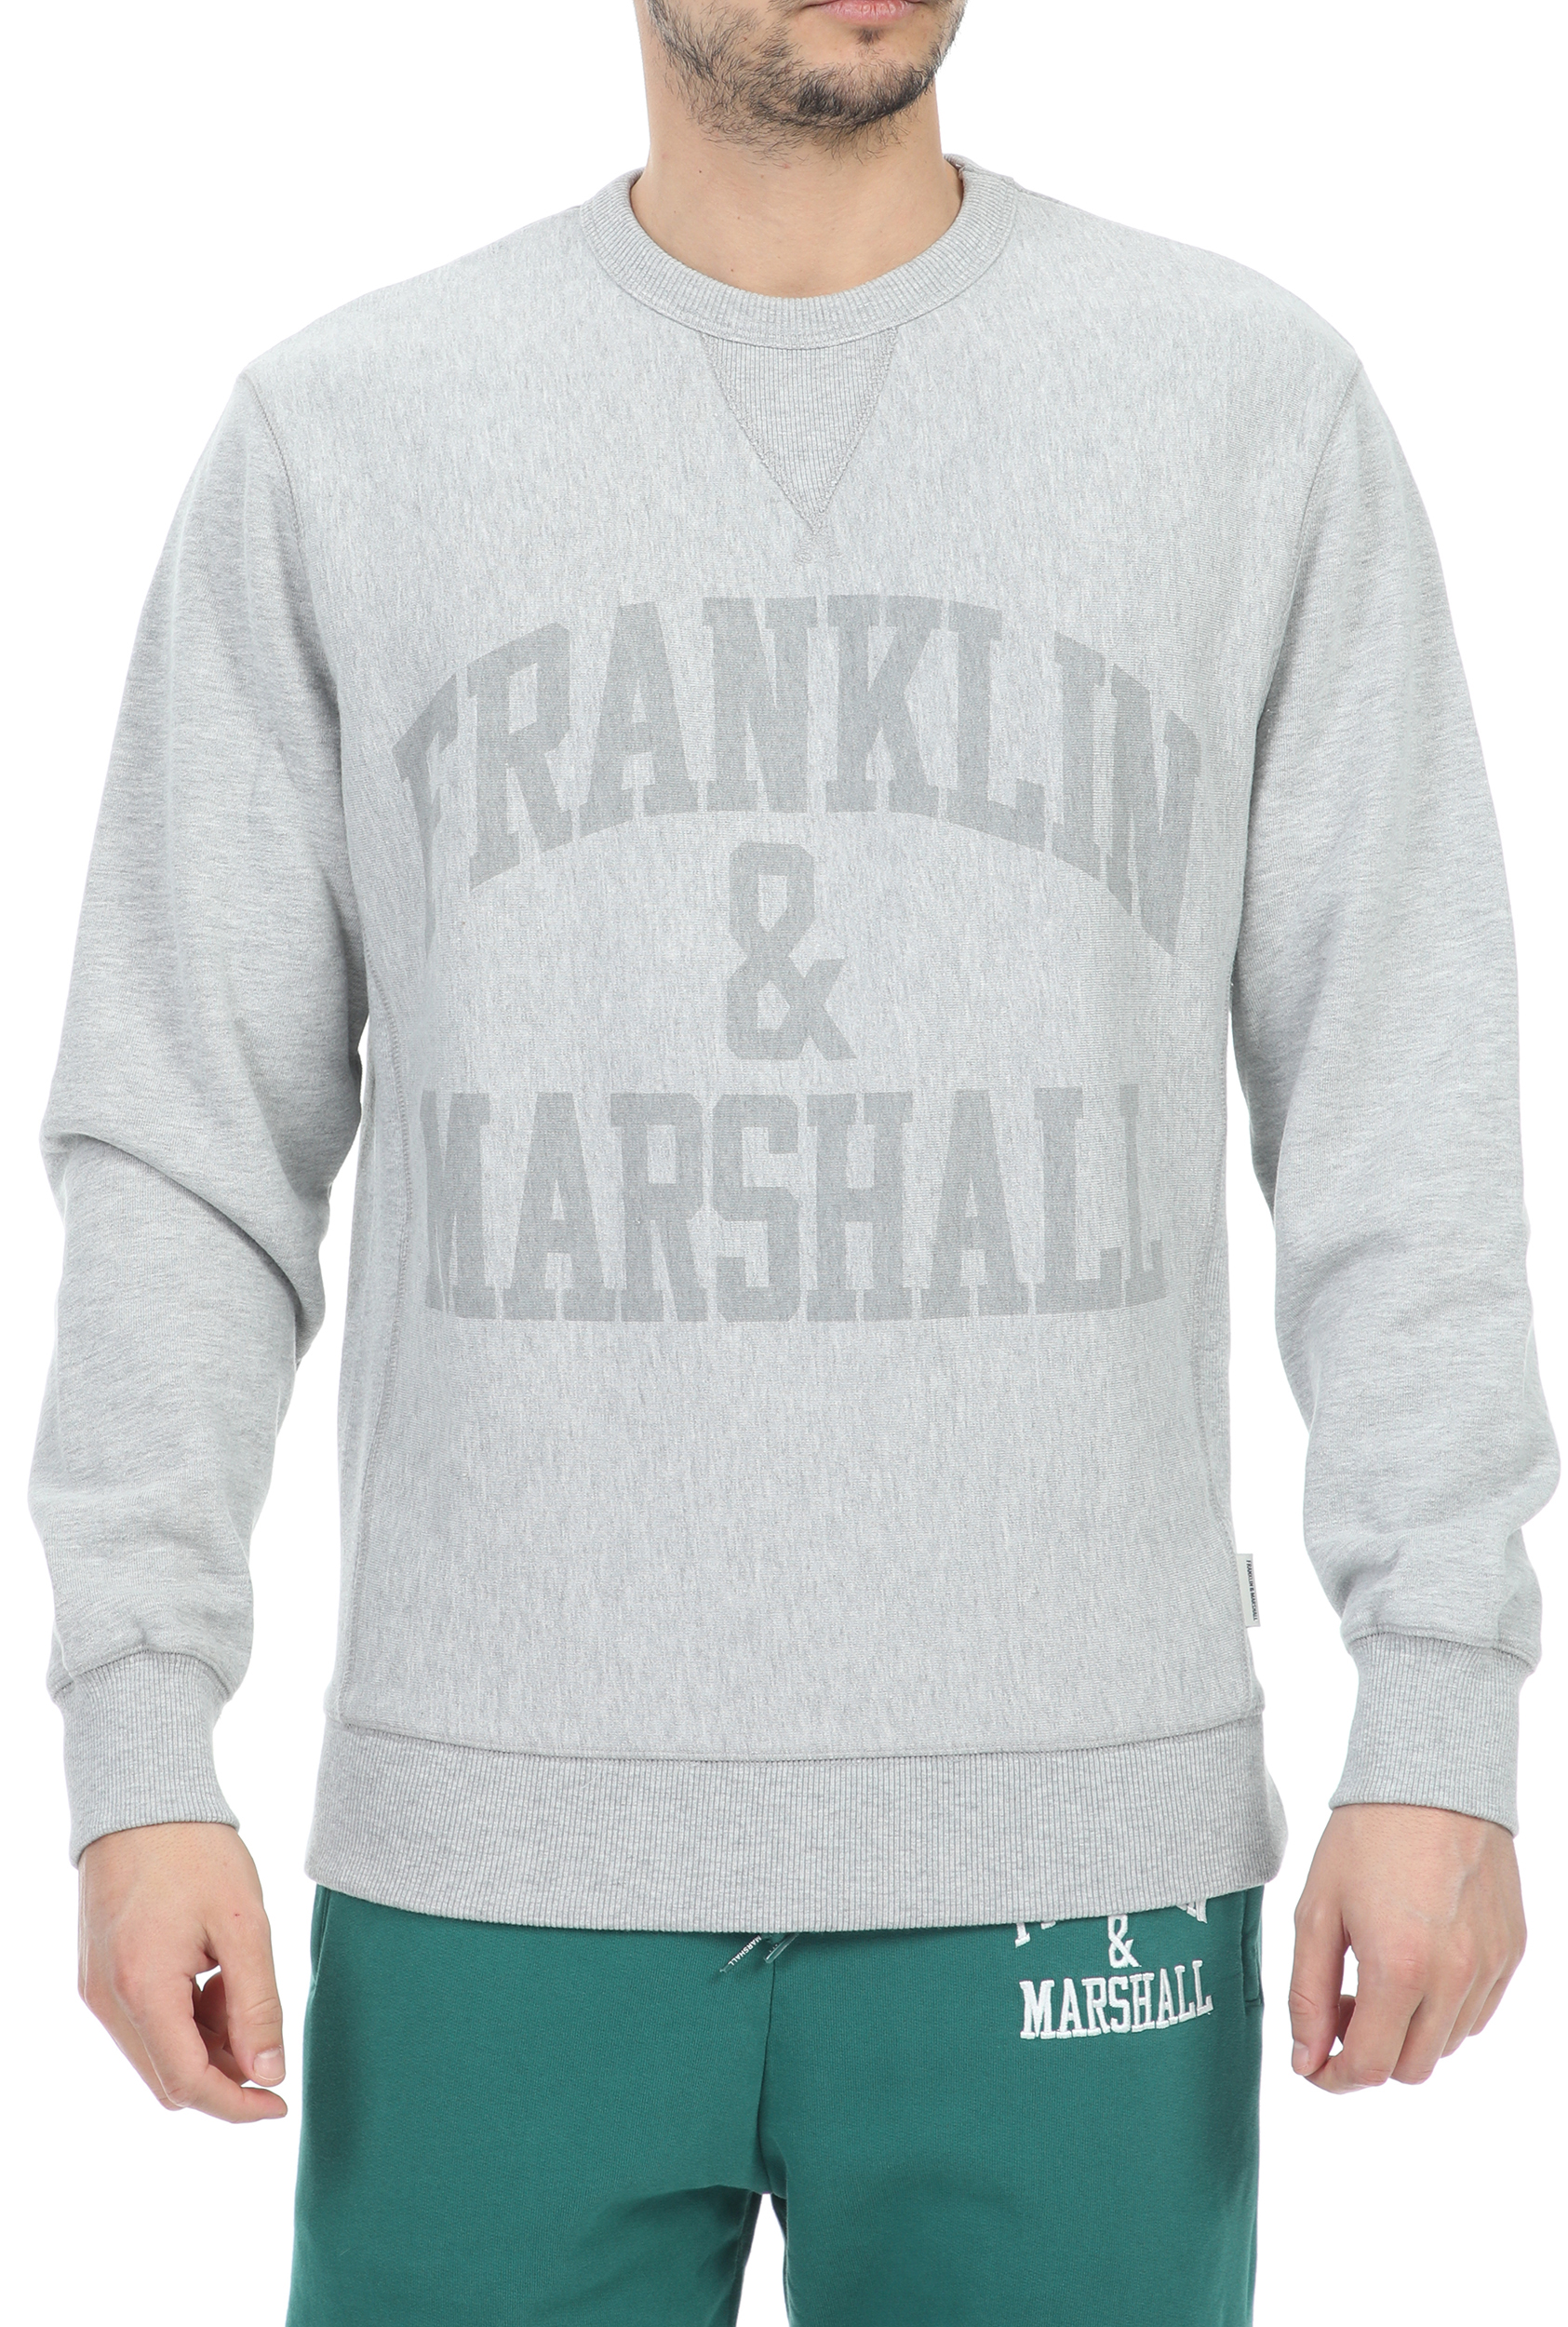 FRANKLIN & MARSHALL - Ανδρική φούτερ μπλούζα FRANKLIN & MARSHALL Sweatshirt-BRUSHED γκρι Ανδρικά/Ρούχα/Φούτερ/Μπλούζες